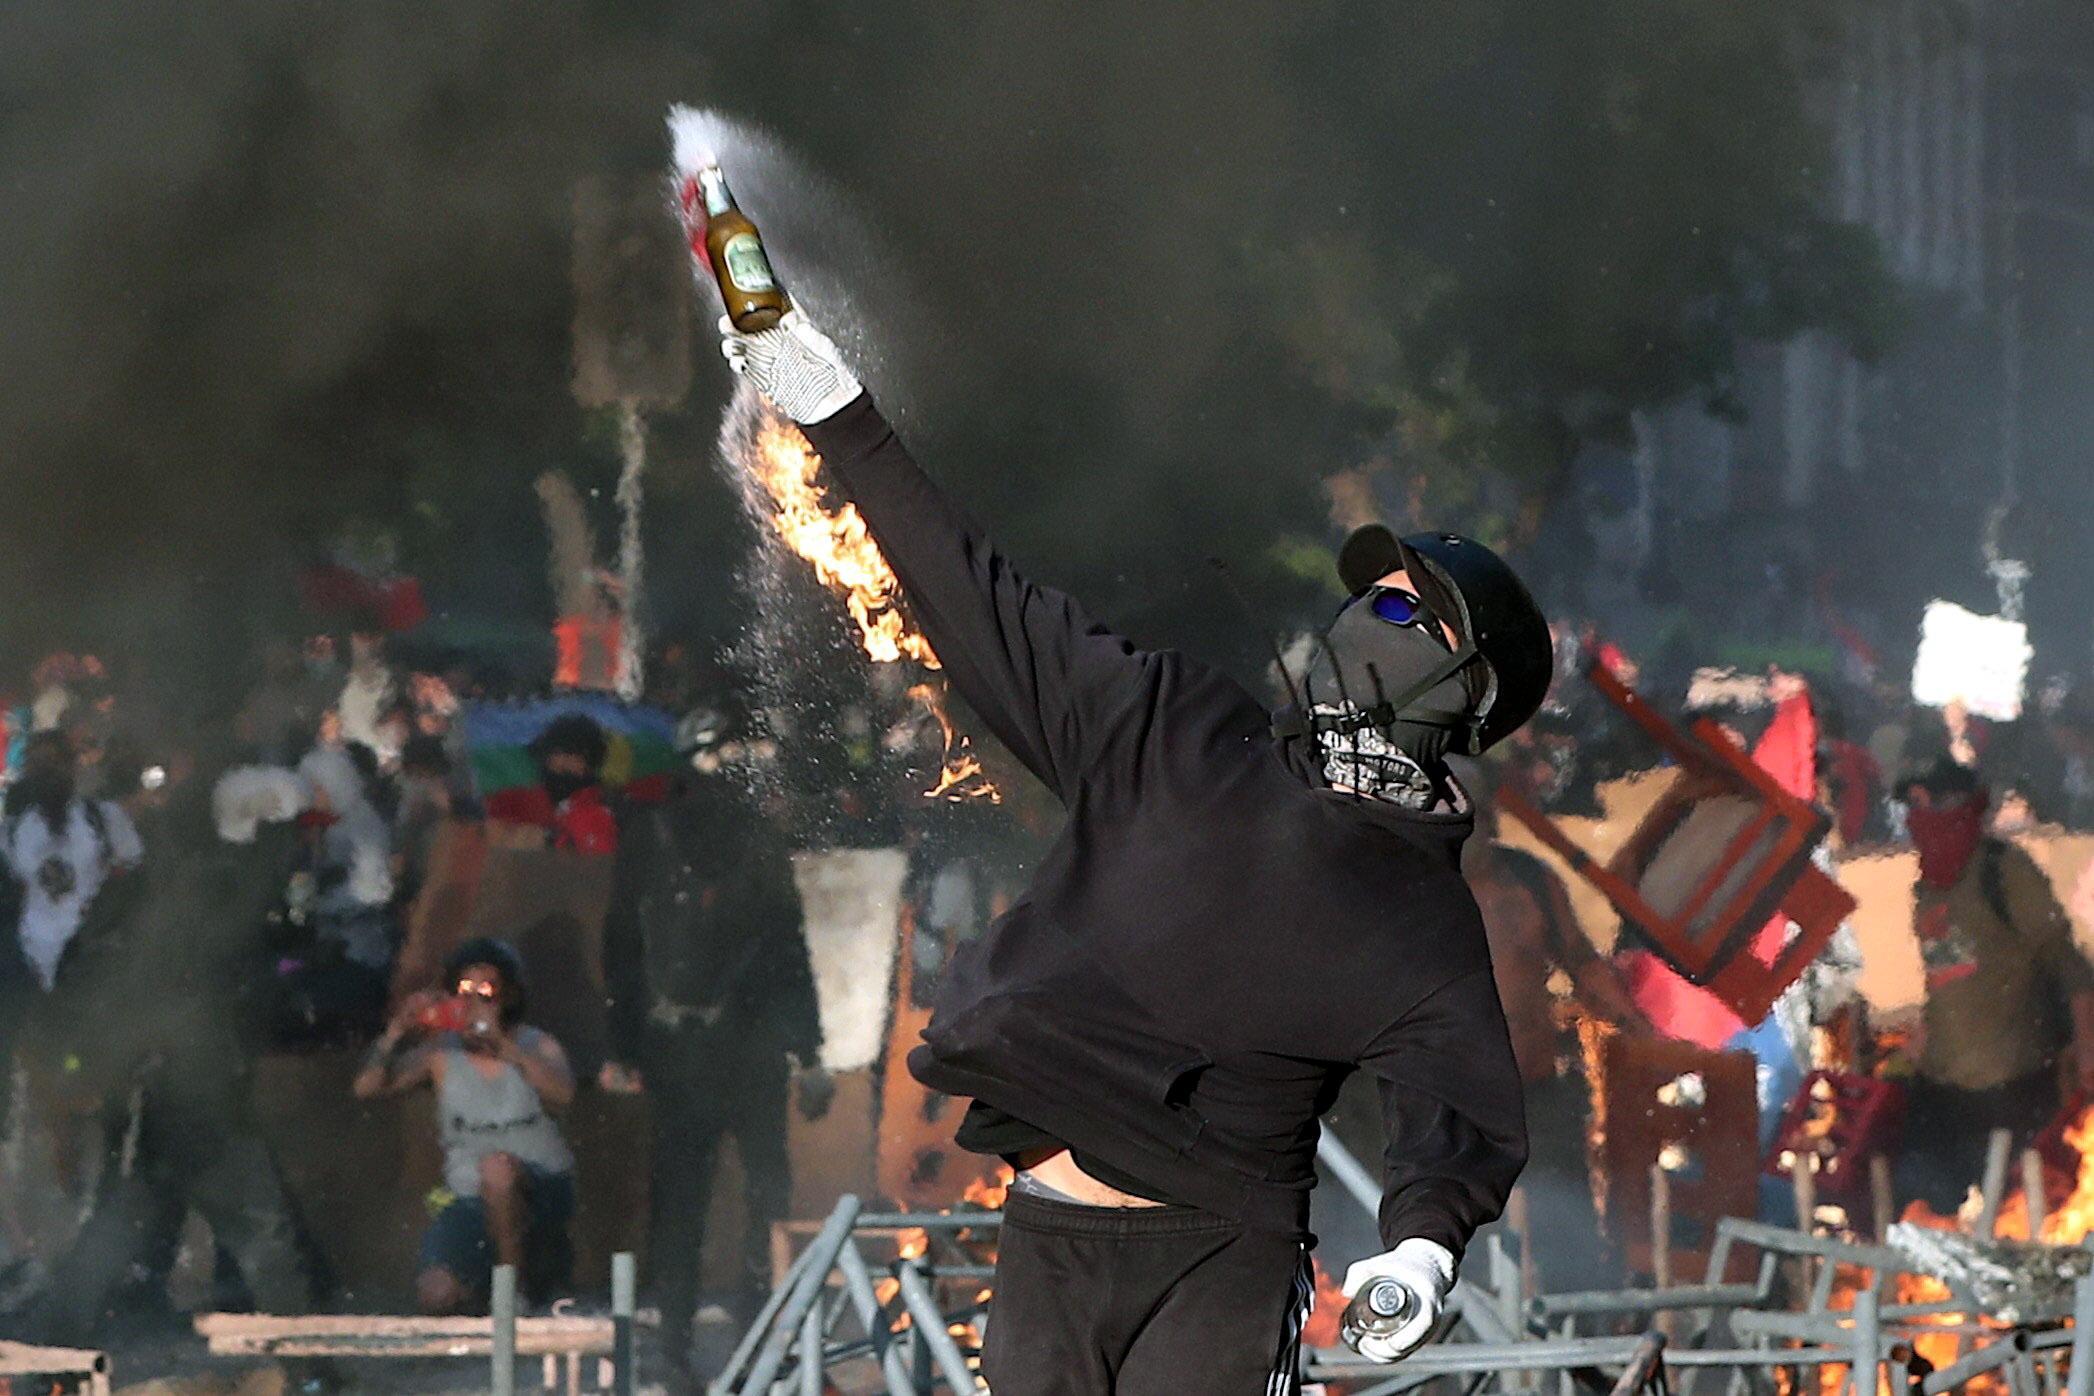 Durante le proteste i manifestanti hanno lanciato contro le forze dell'ordine anche delle bombe molotov